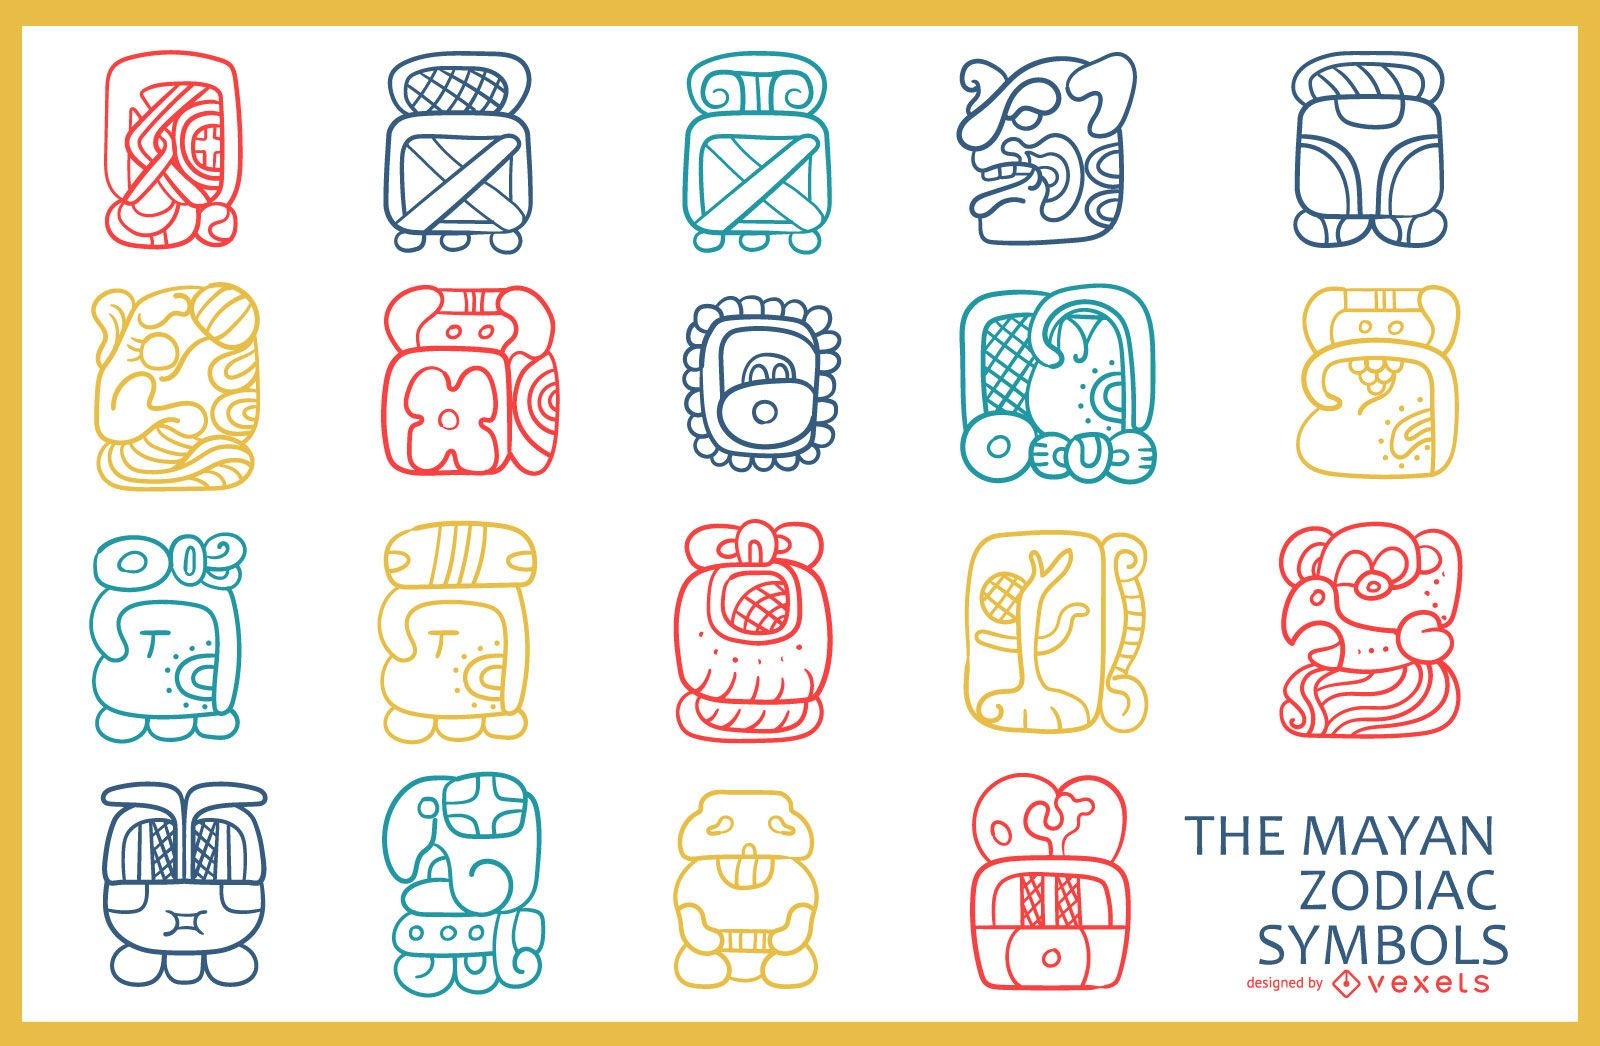 Mayan zodiac symbols pack